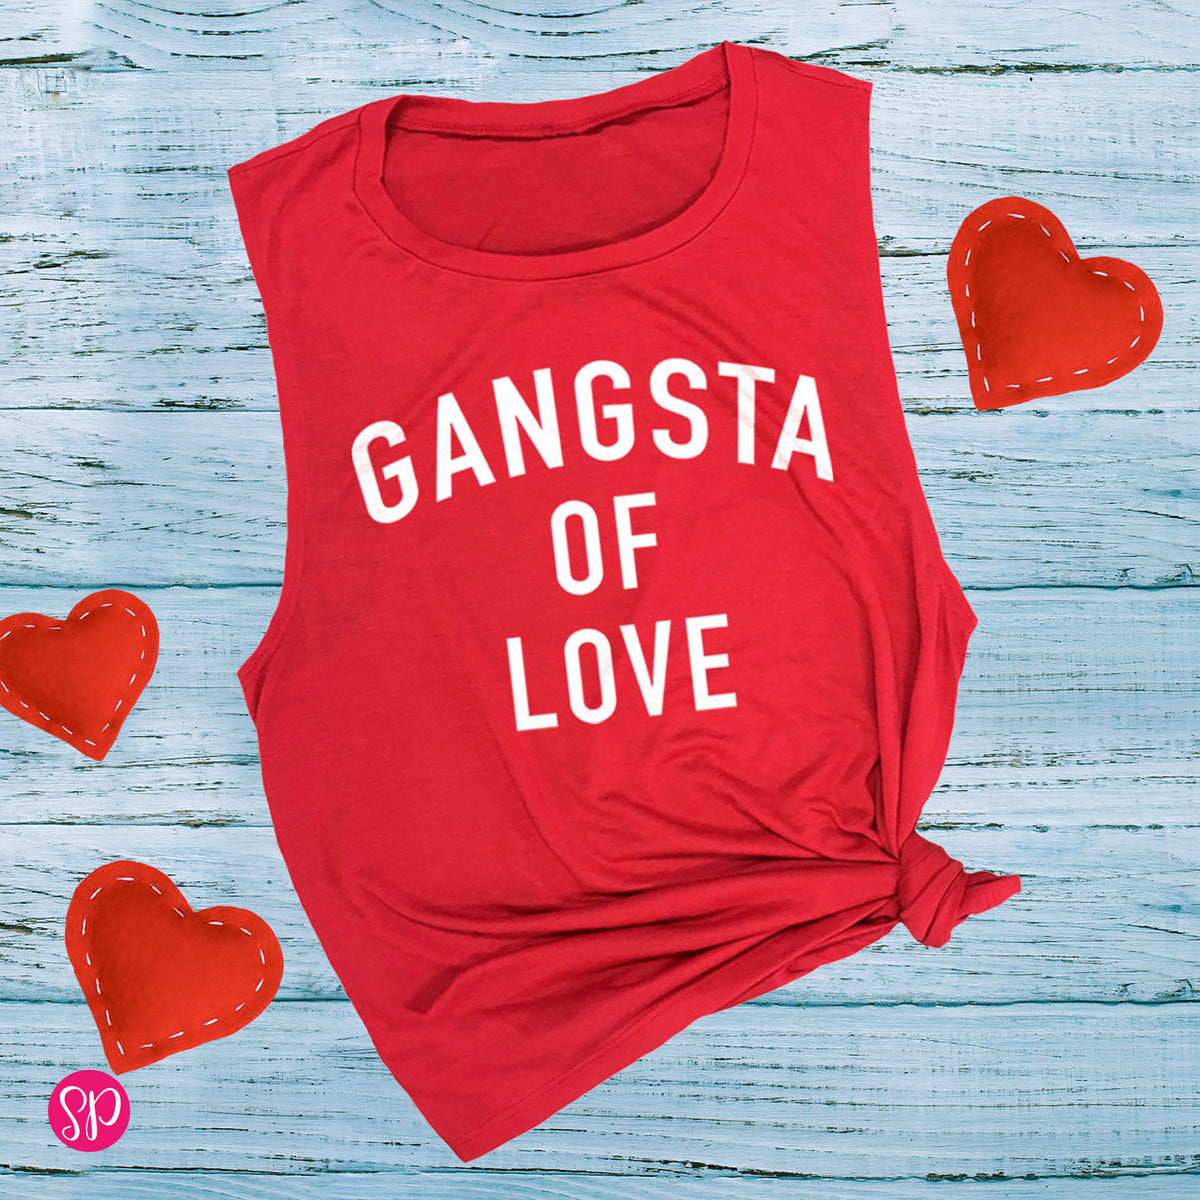 Gangsta of Love Muscle Tee